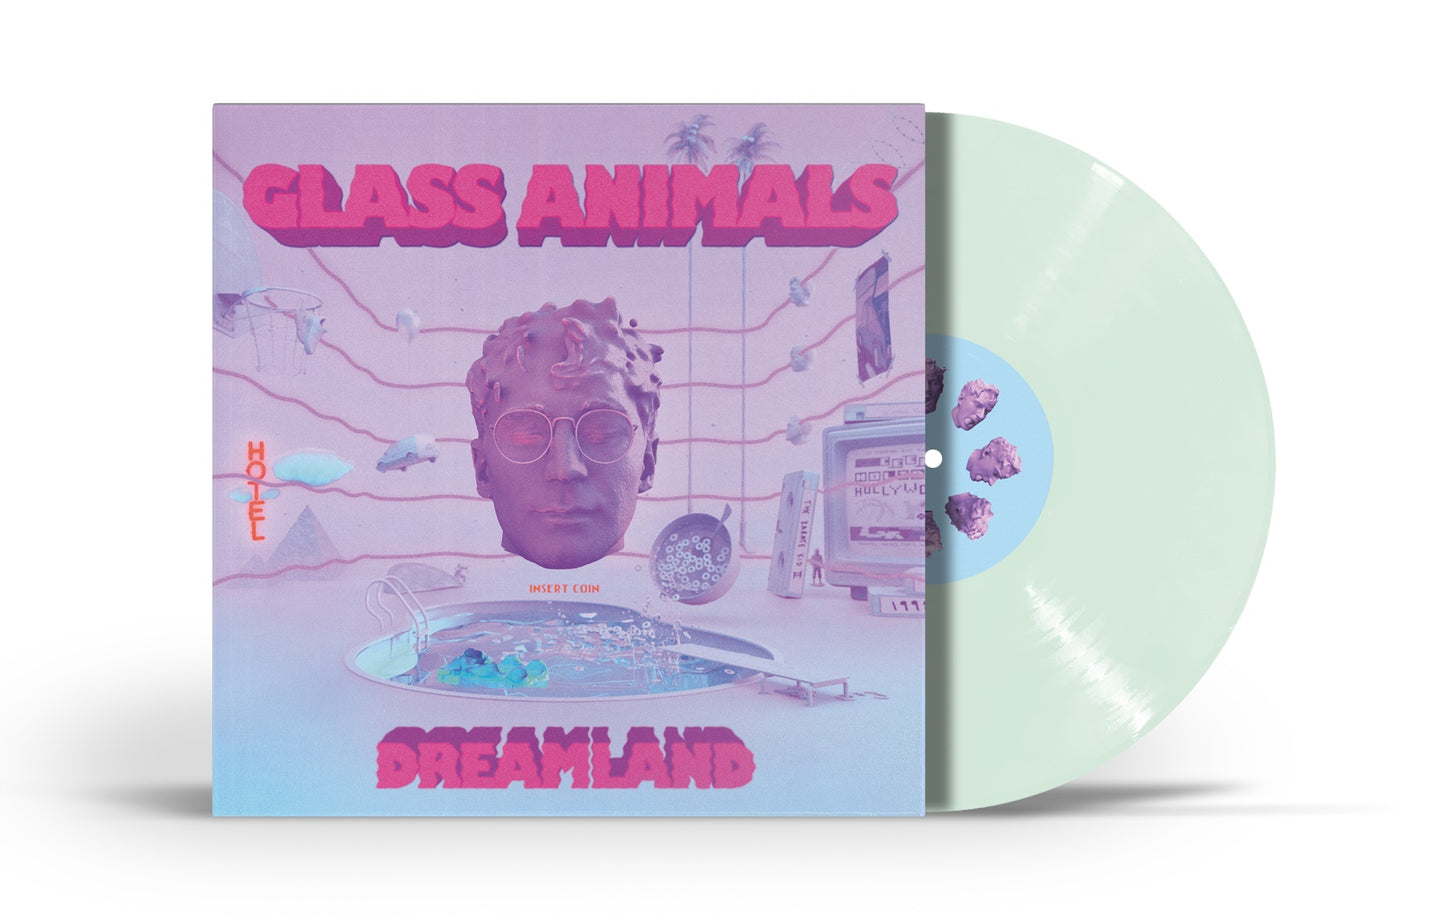 Glass Animals - Dreamland [Glow In The Dark LP] - Vinyl